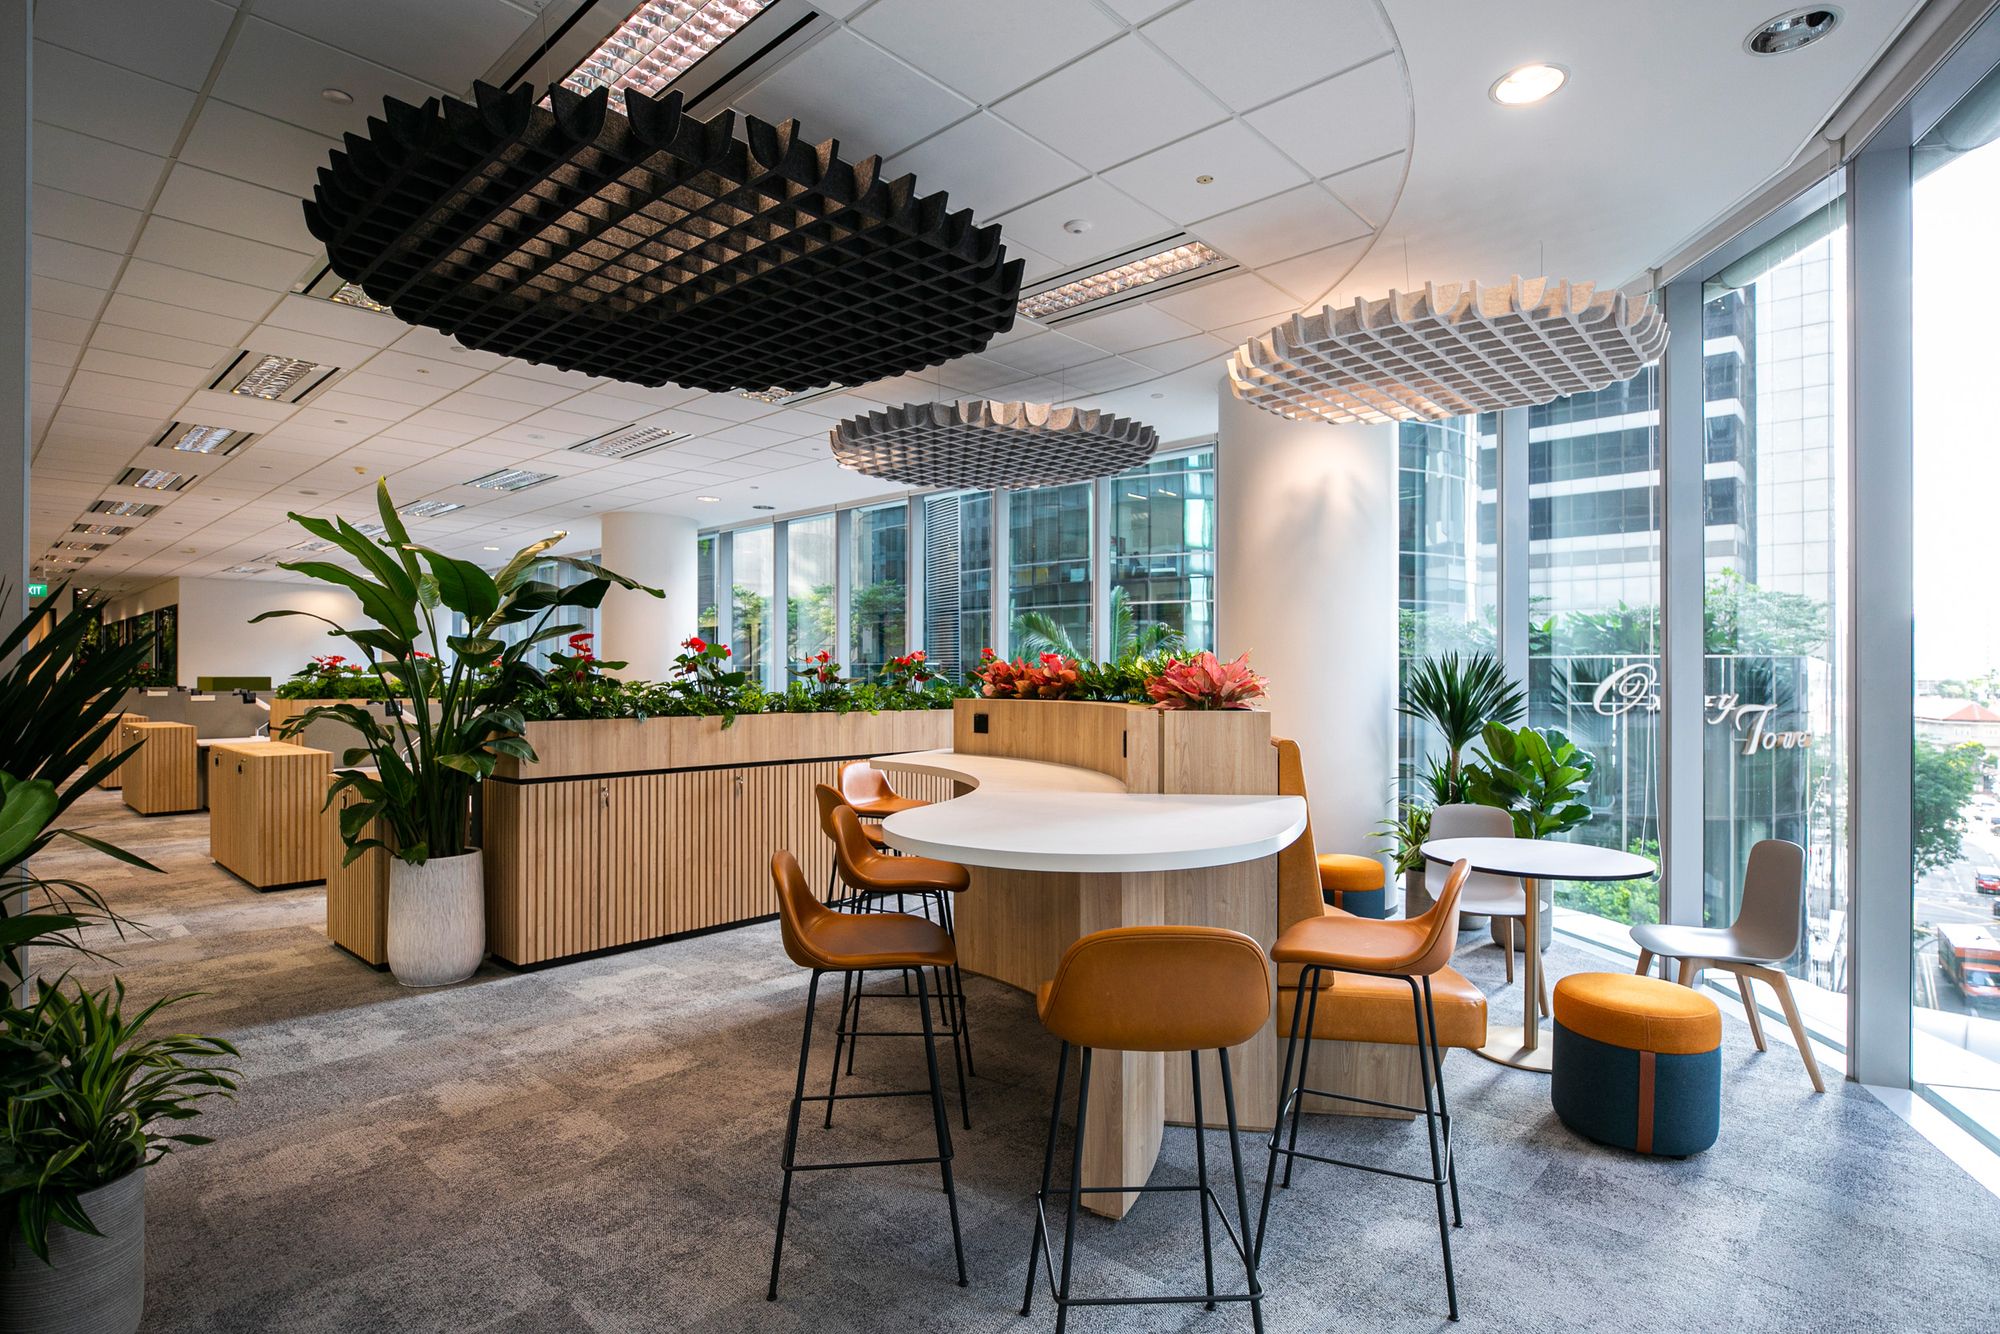 图片[2]|保密金融客户办公室——新加坡|ART-Arrakis | 建筑室内设计的创新与灵感